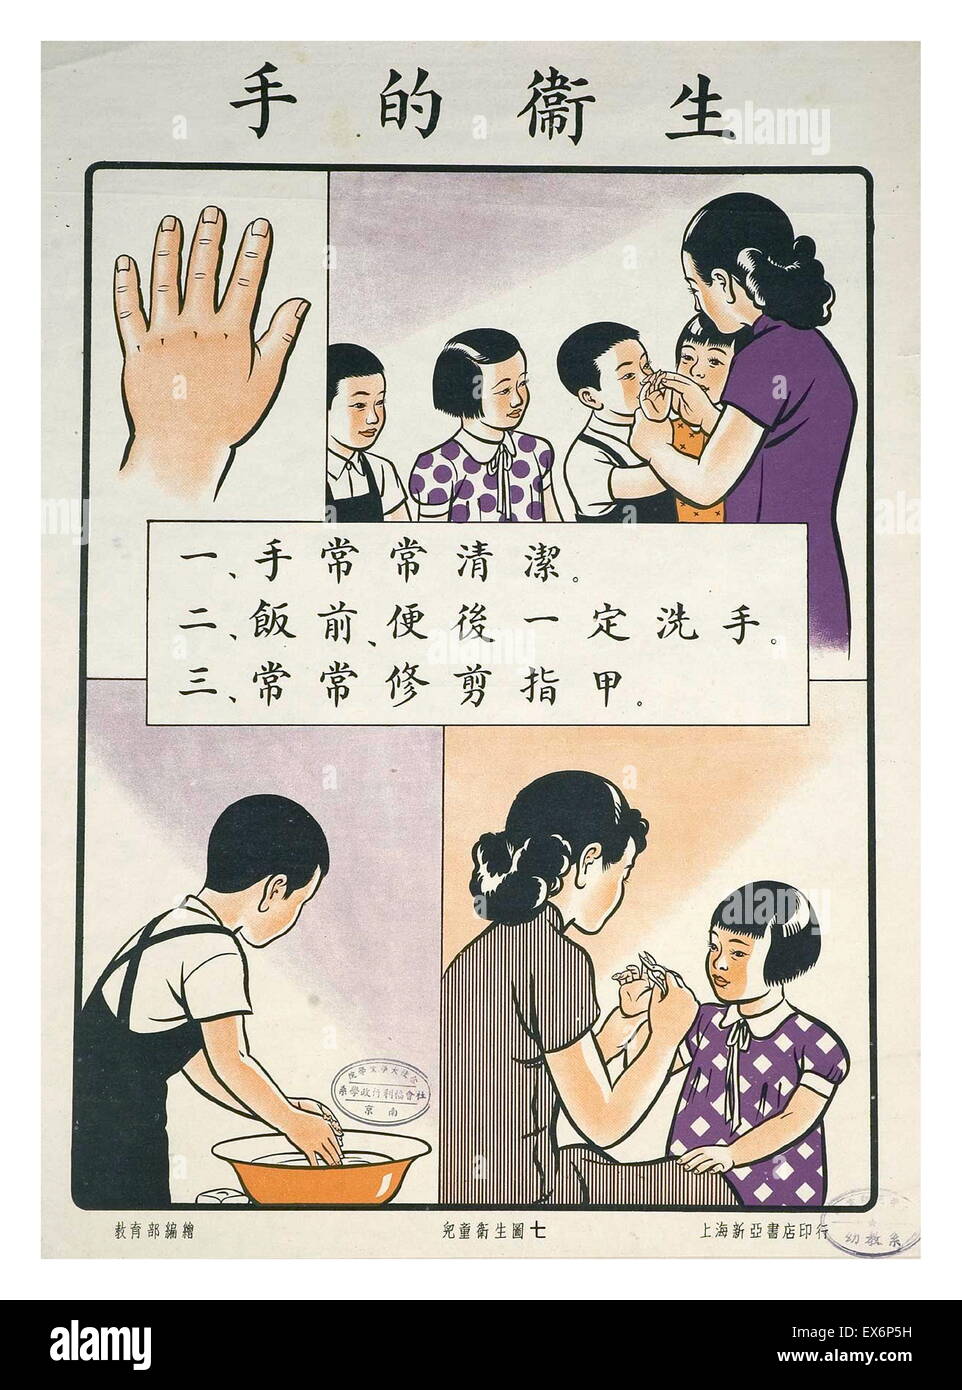 Ministerio de Educación de China 1935 Cartel de la salud pública. Higiene de manos: lavarse las manos limpias, lavar antes de las comidas y después de W.C., y cortar las uñas de las manos con regularidad. Foto de stock